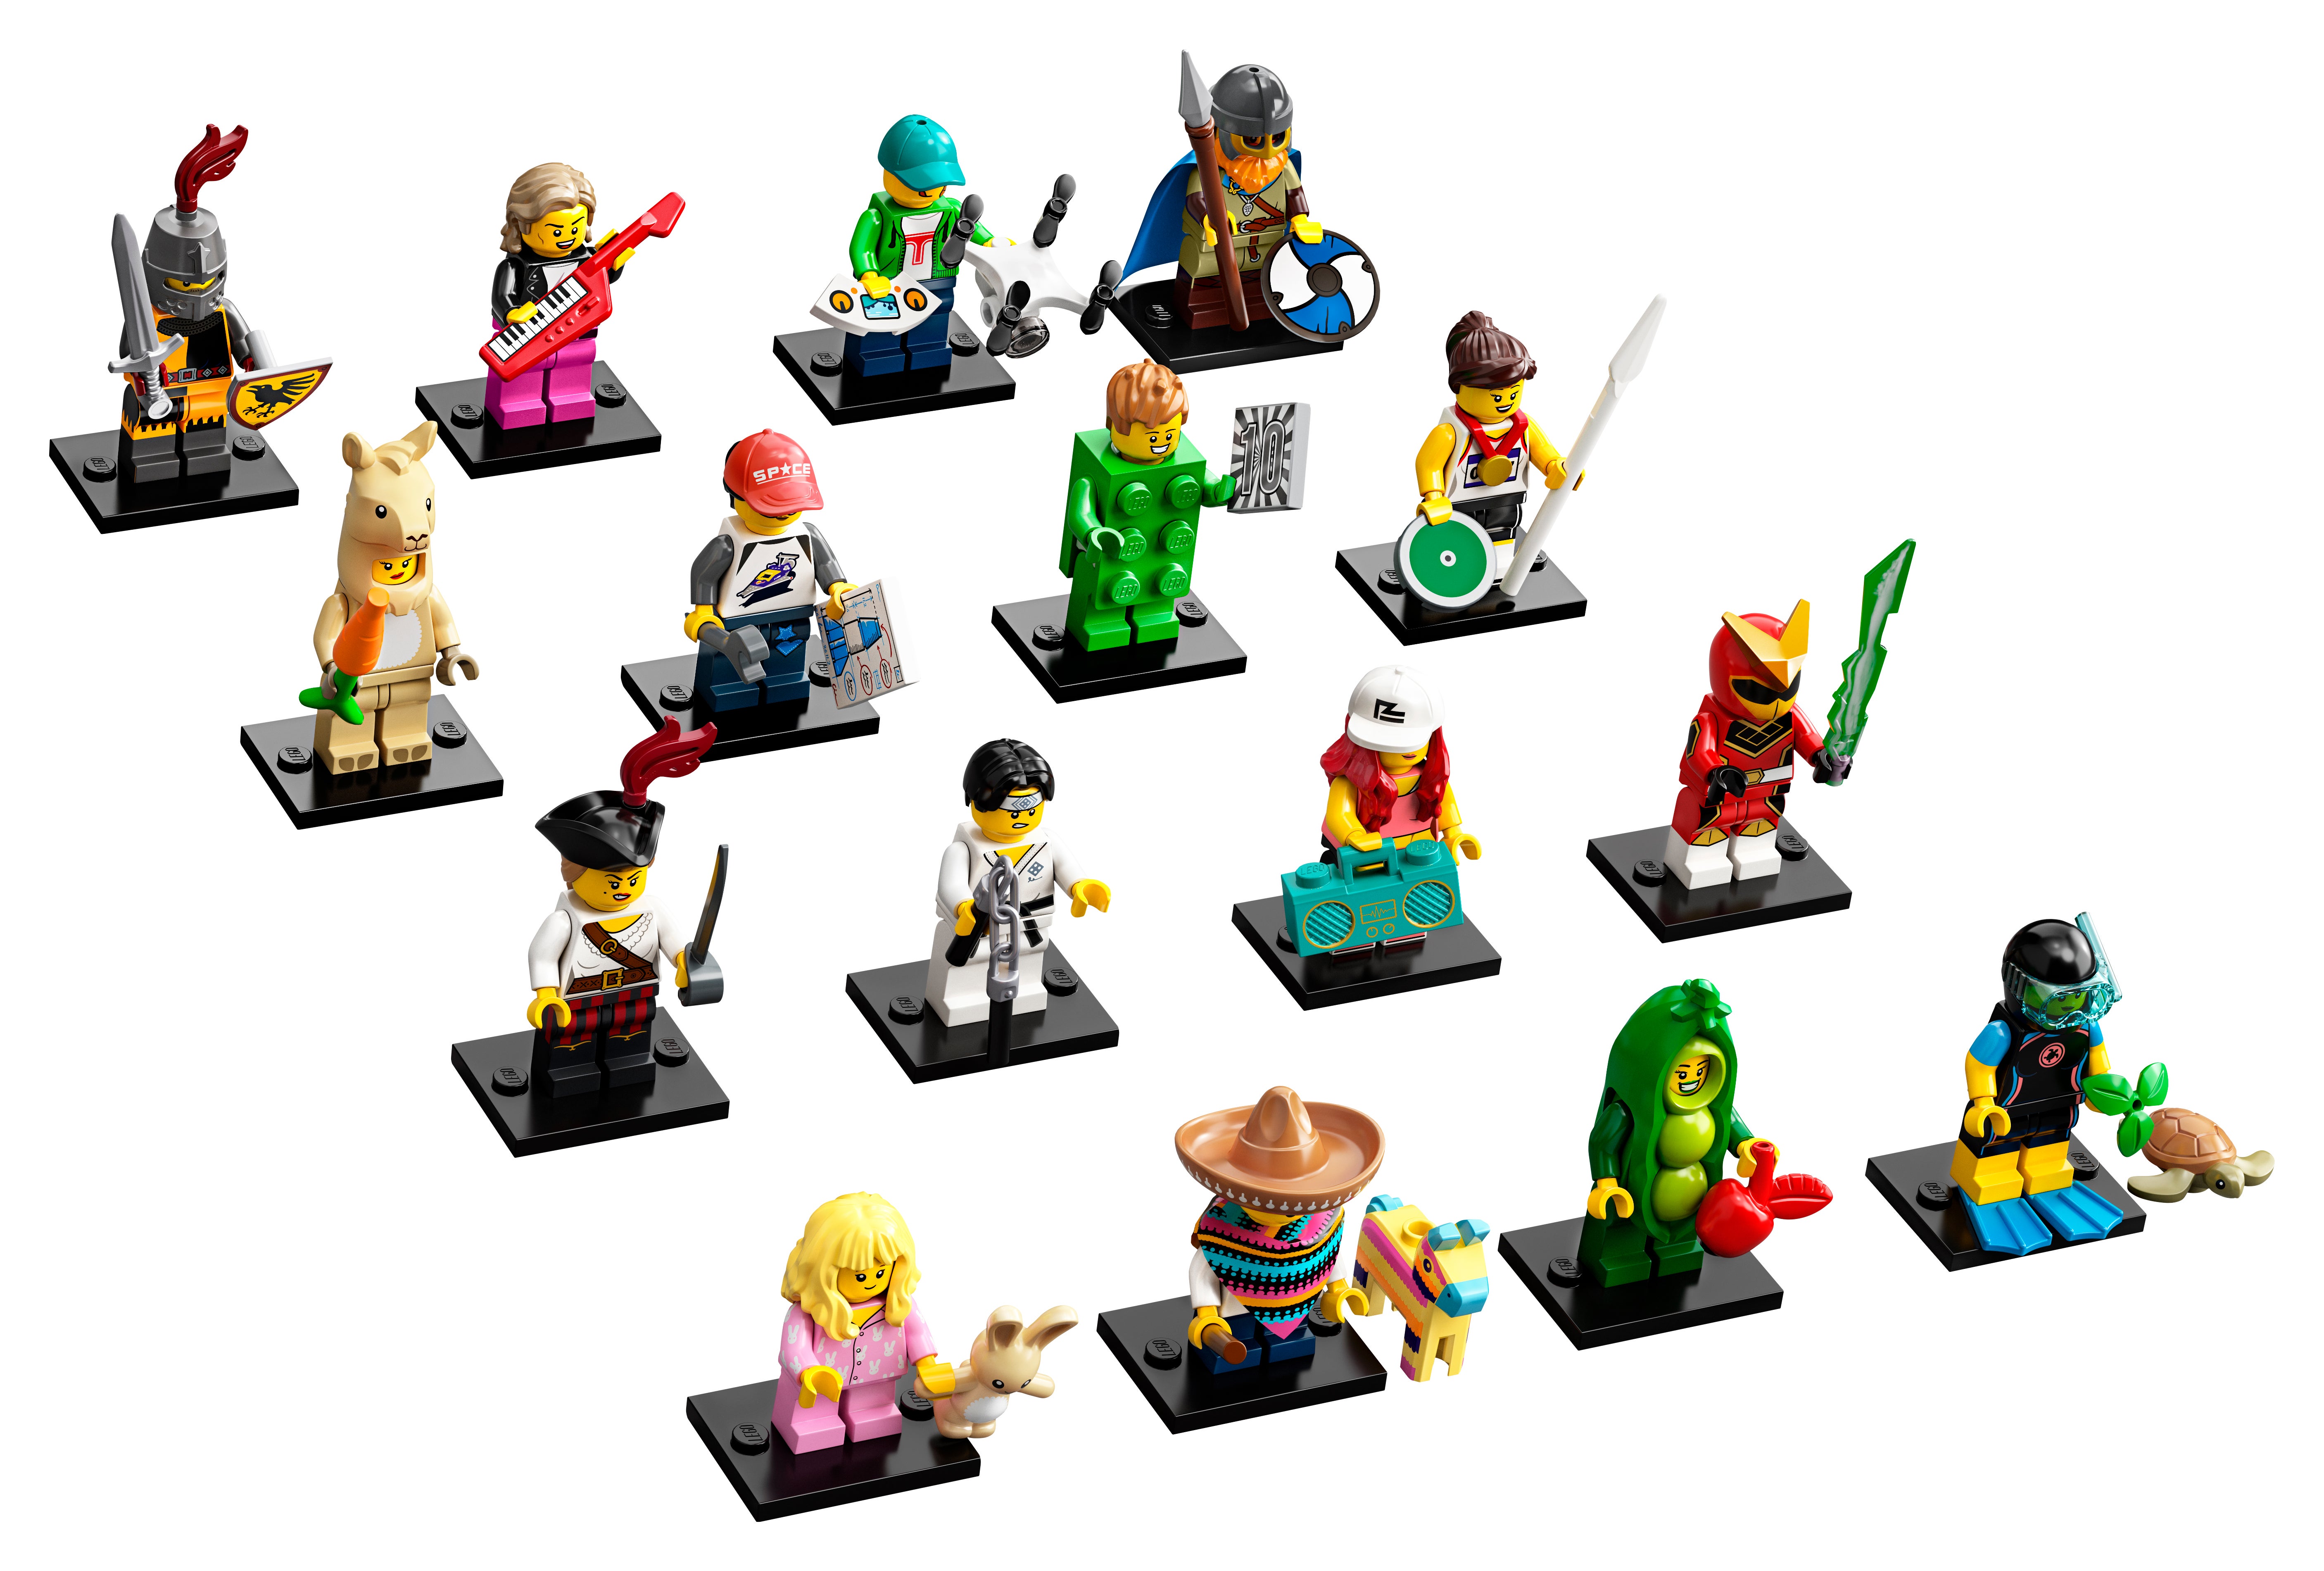 LEGO personnage accessoires bouées jaune 184 # 